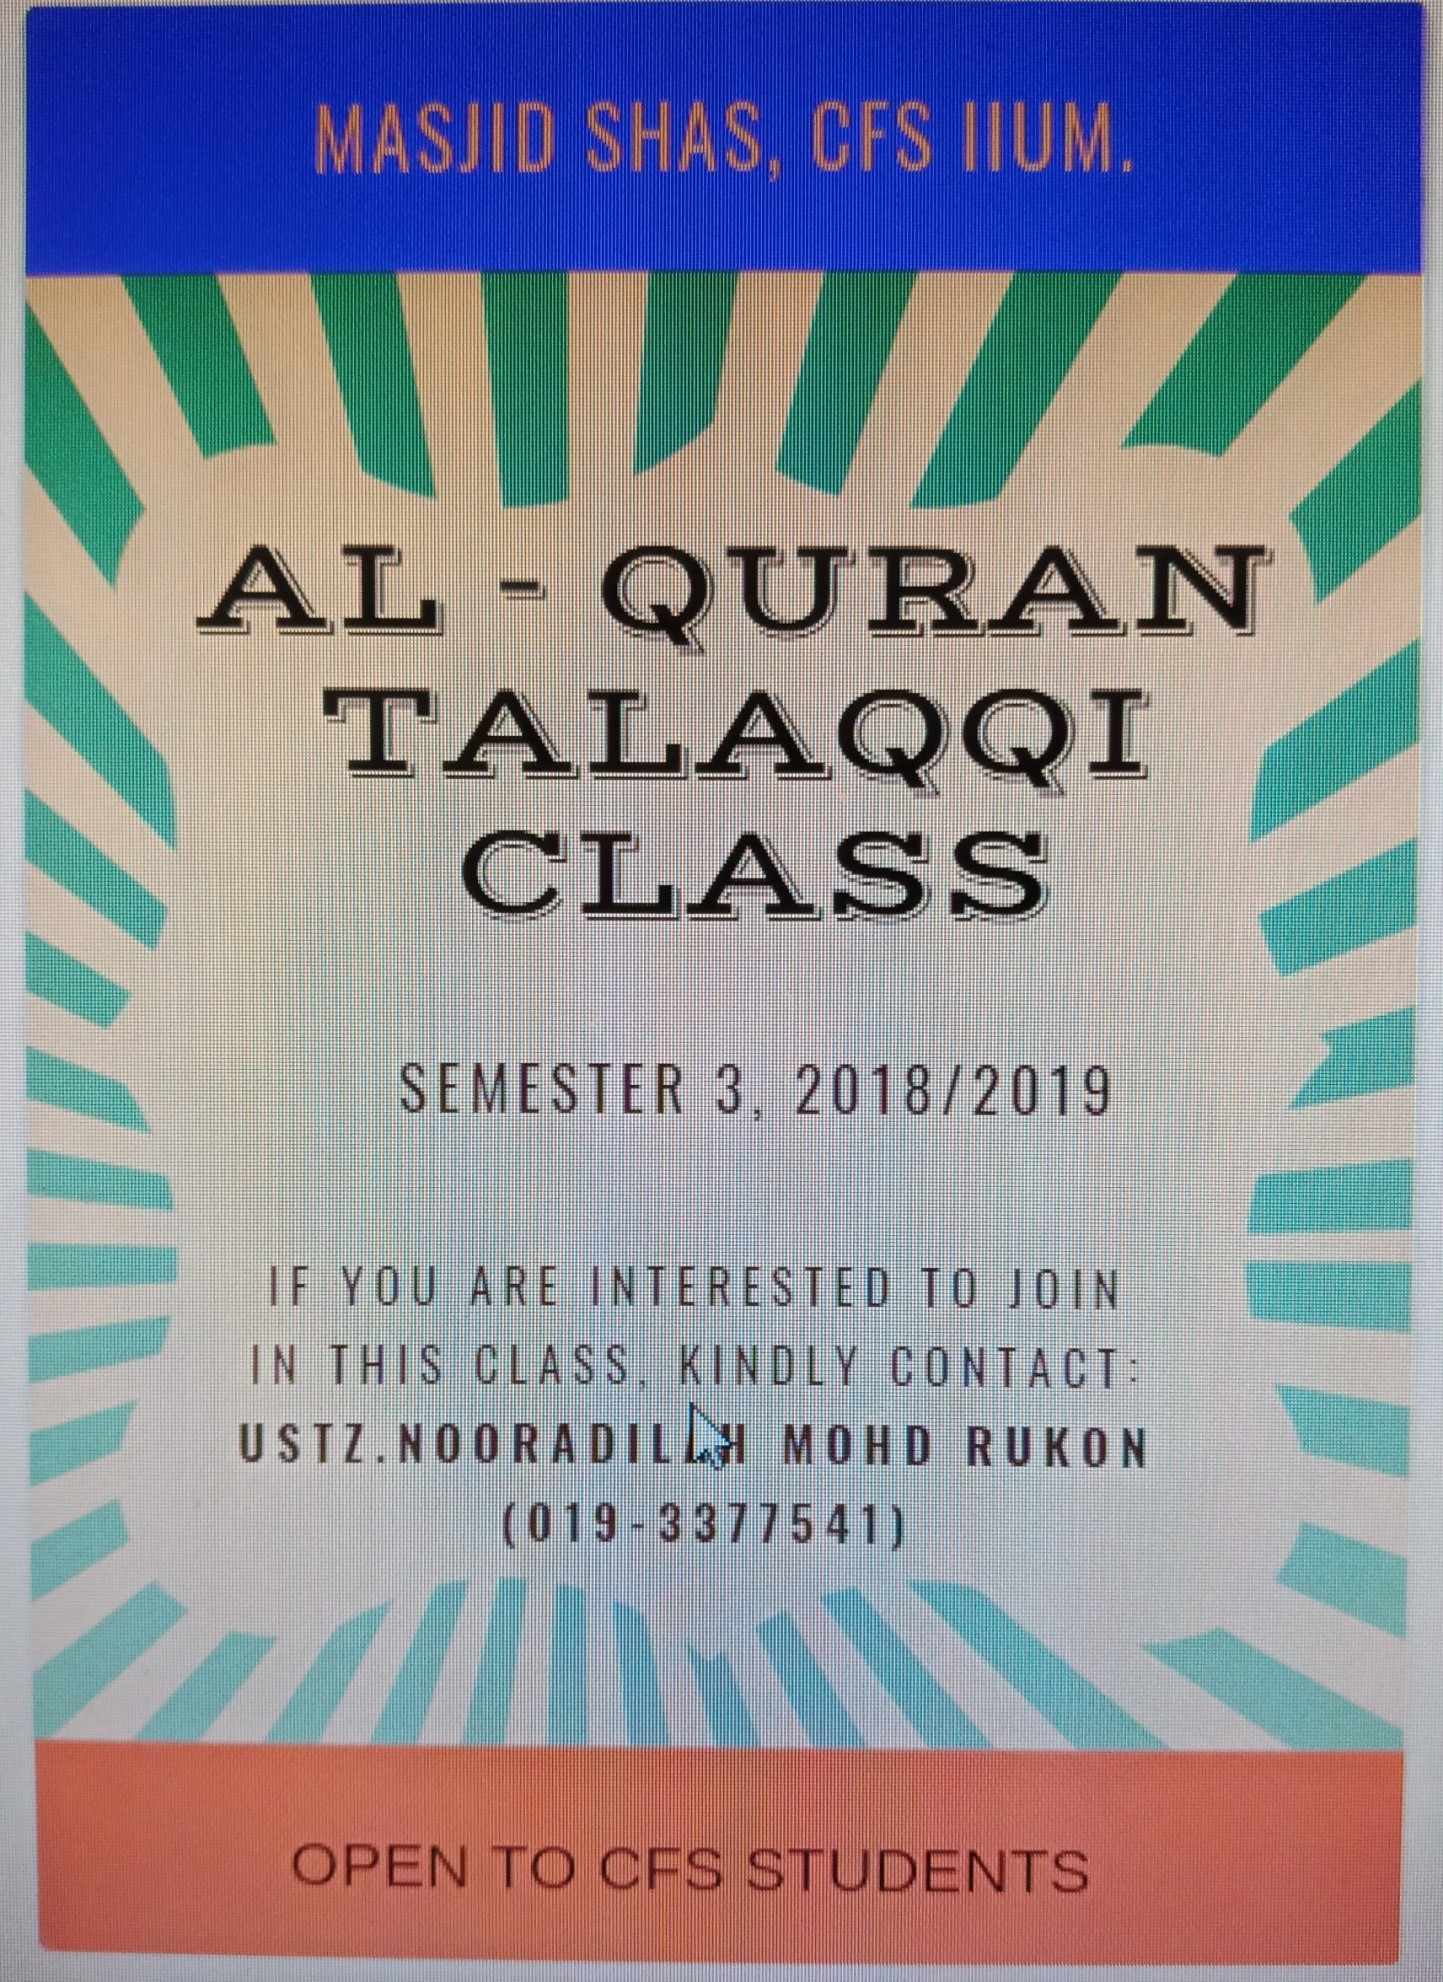 TALAQQI CLASS FOR CFS STUDENTS SEMESTER 3, 2018/2019